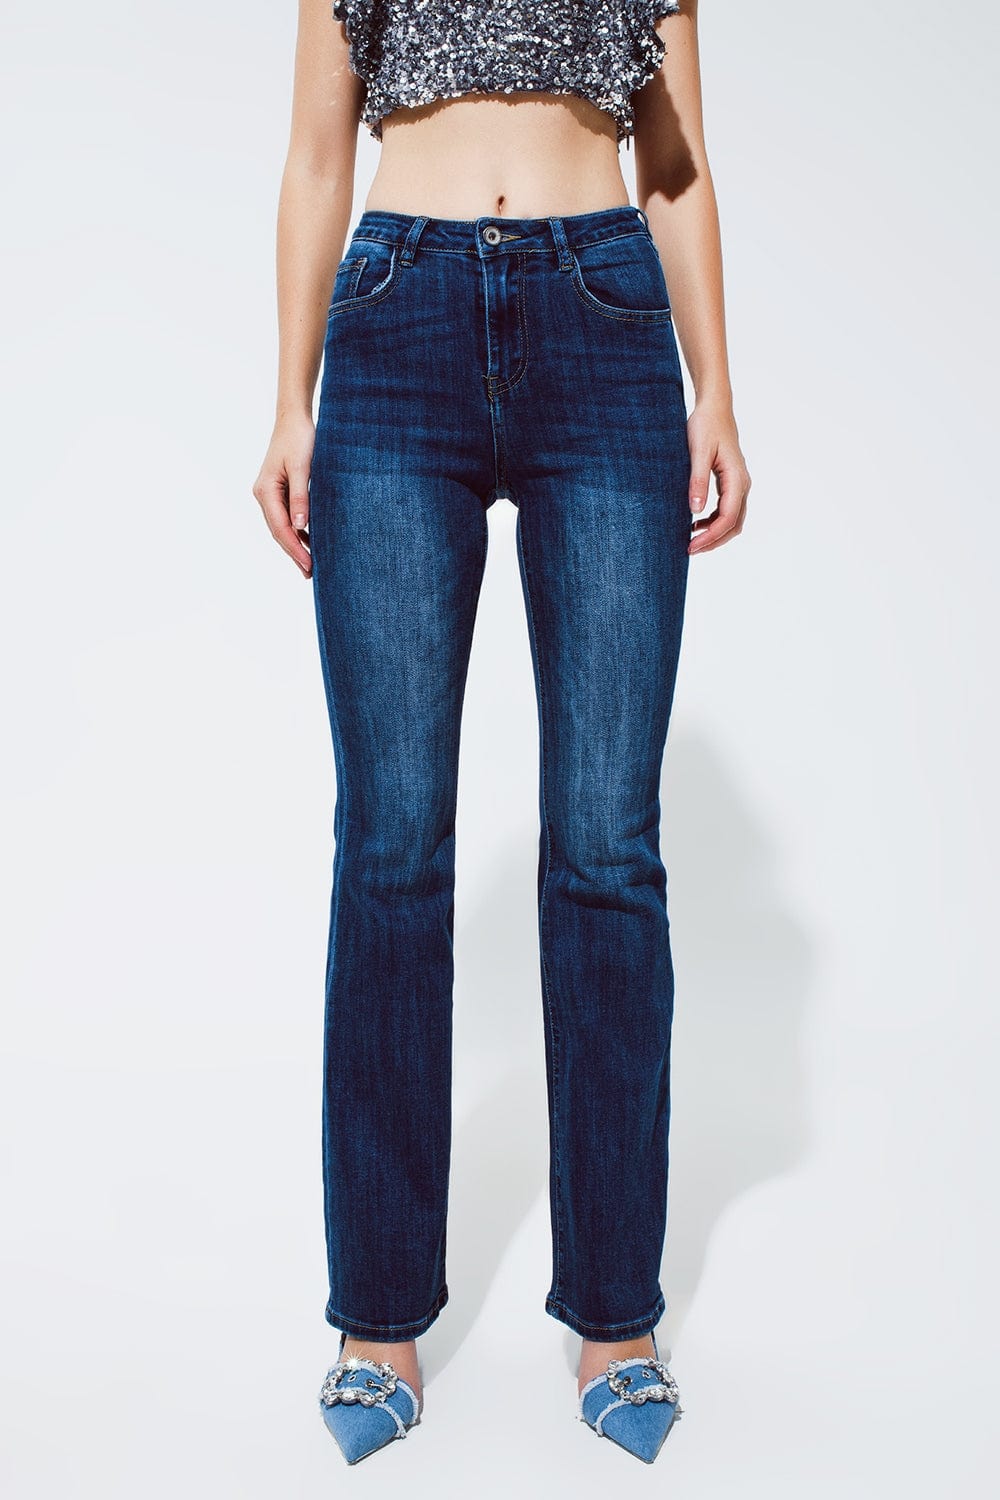 Q2 Women's Jean Denim Jeans Flaire In Dark Blue Wash